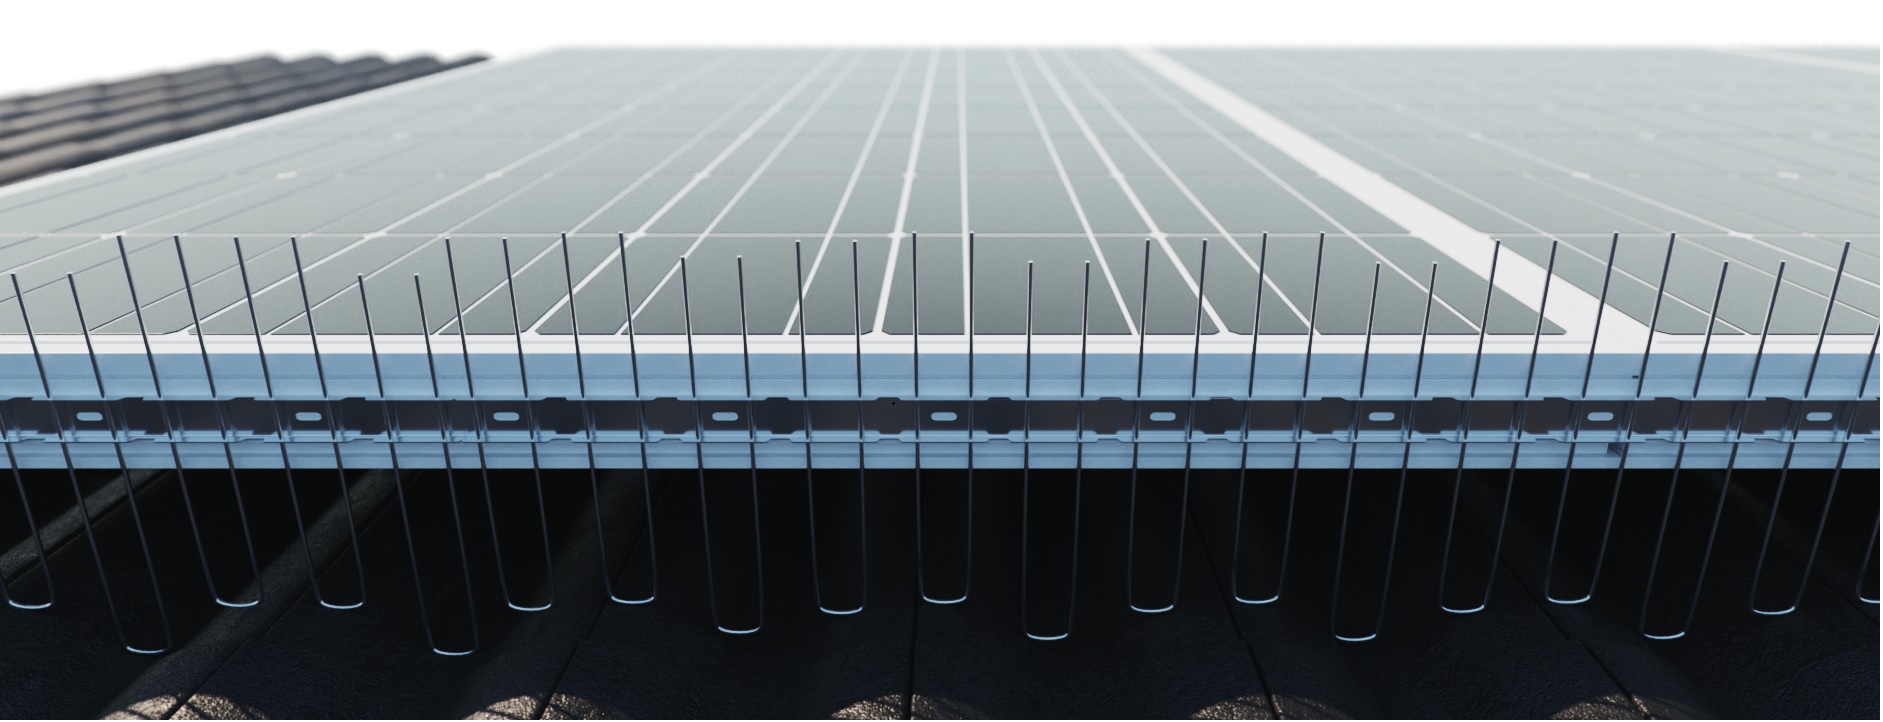 1 reihige verstellbare Solar Taubenabwehr-Spikes 1 m lang aus Edelstahl